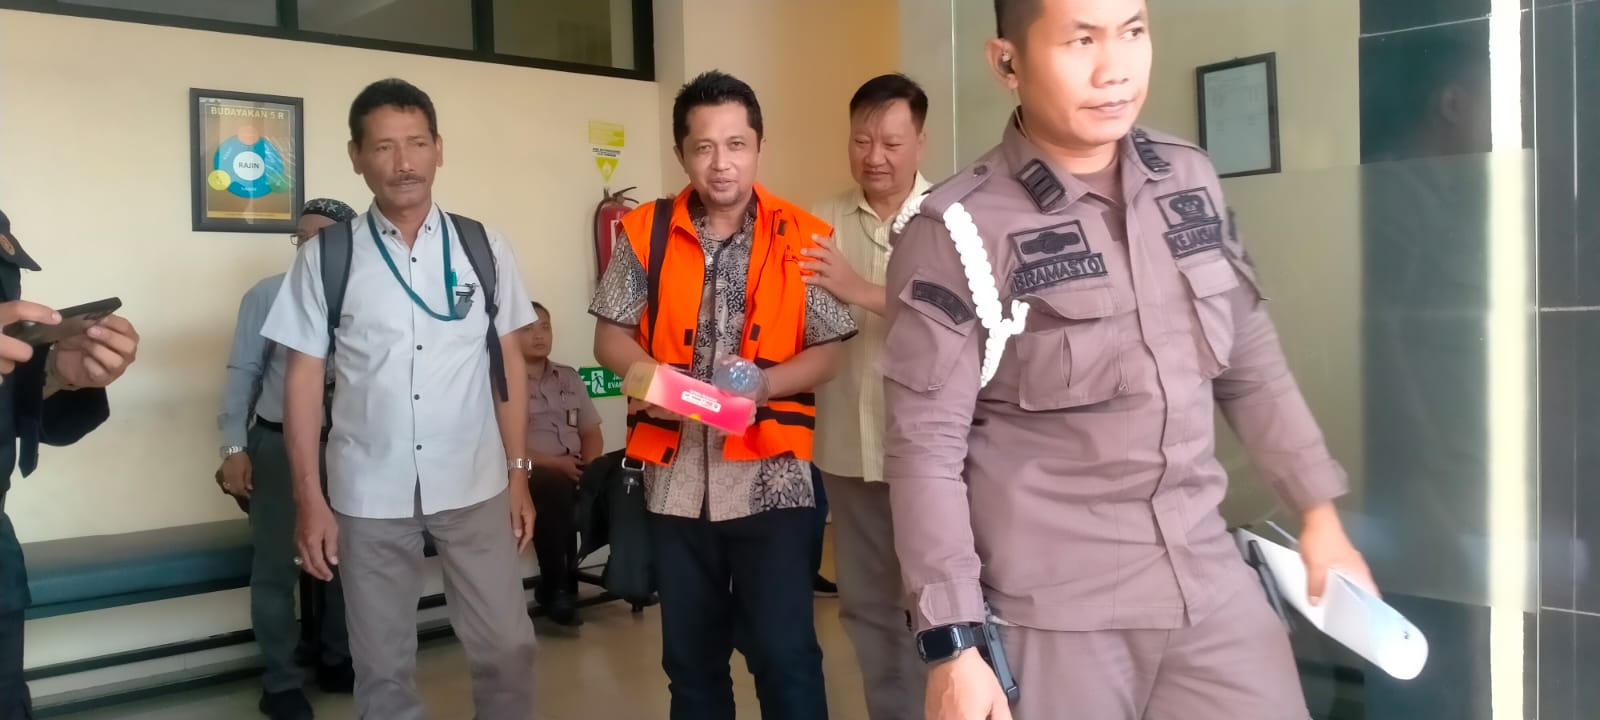 Sidang Pemotongan Insentif ASN BPPD Kabupaten Sidoarjo, Saksi: Aliran ke Oknum Jaksa, ‘Amankan’ Kasus di Pajak